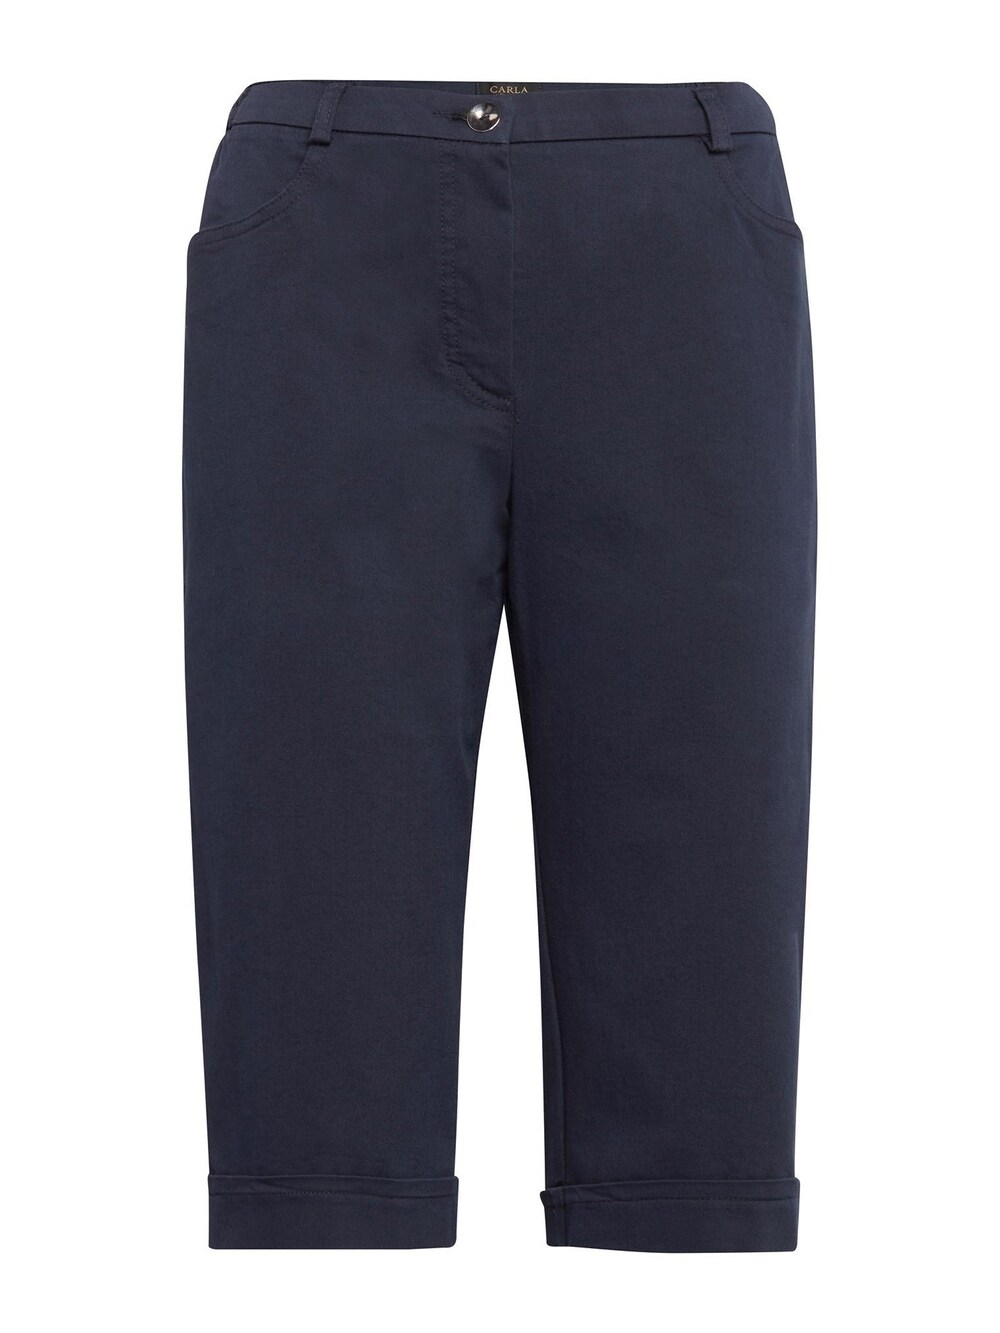 Обычные брюки Goldner, темно-синий обычные брюки goldner морской синий